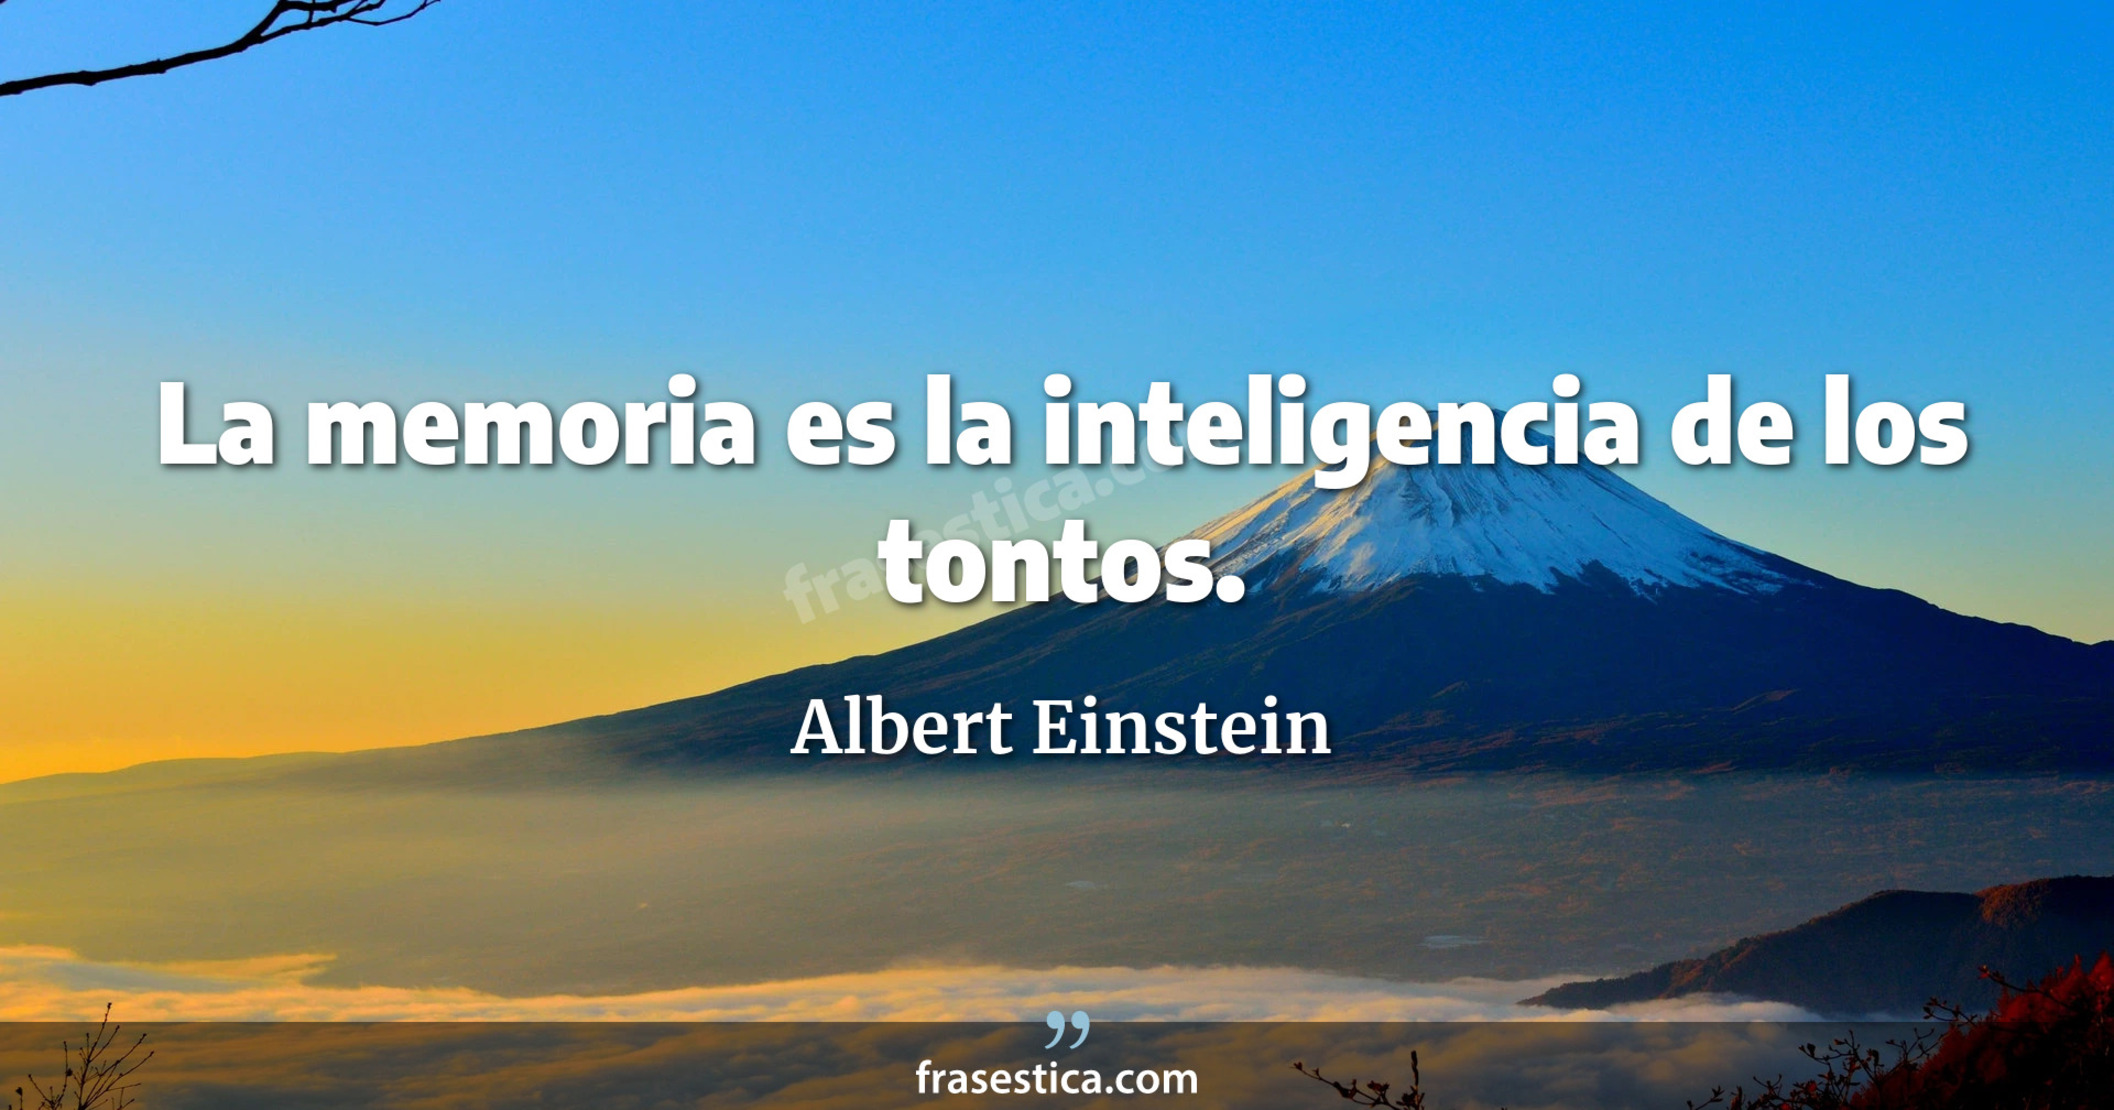 La memoria es la inteligencia de los tontos. - Albert Einstein